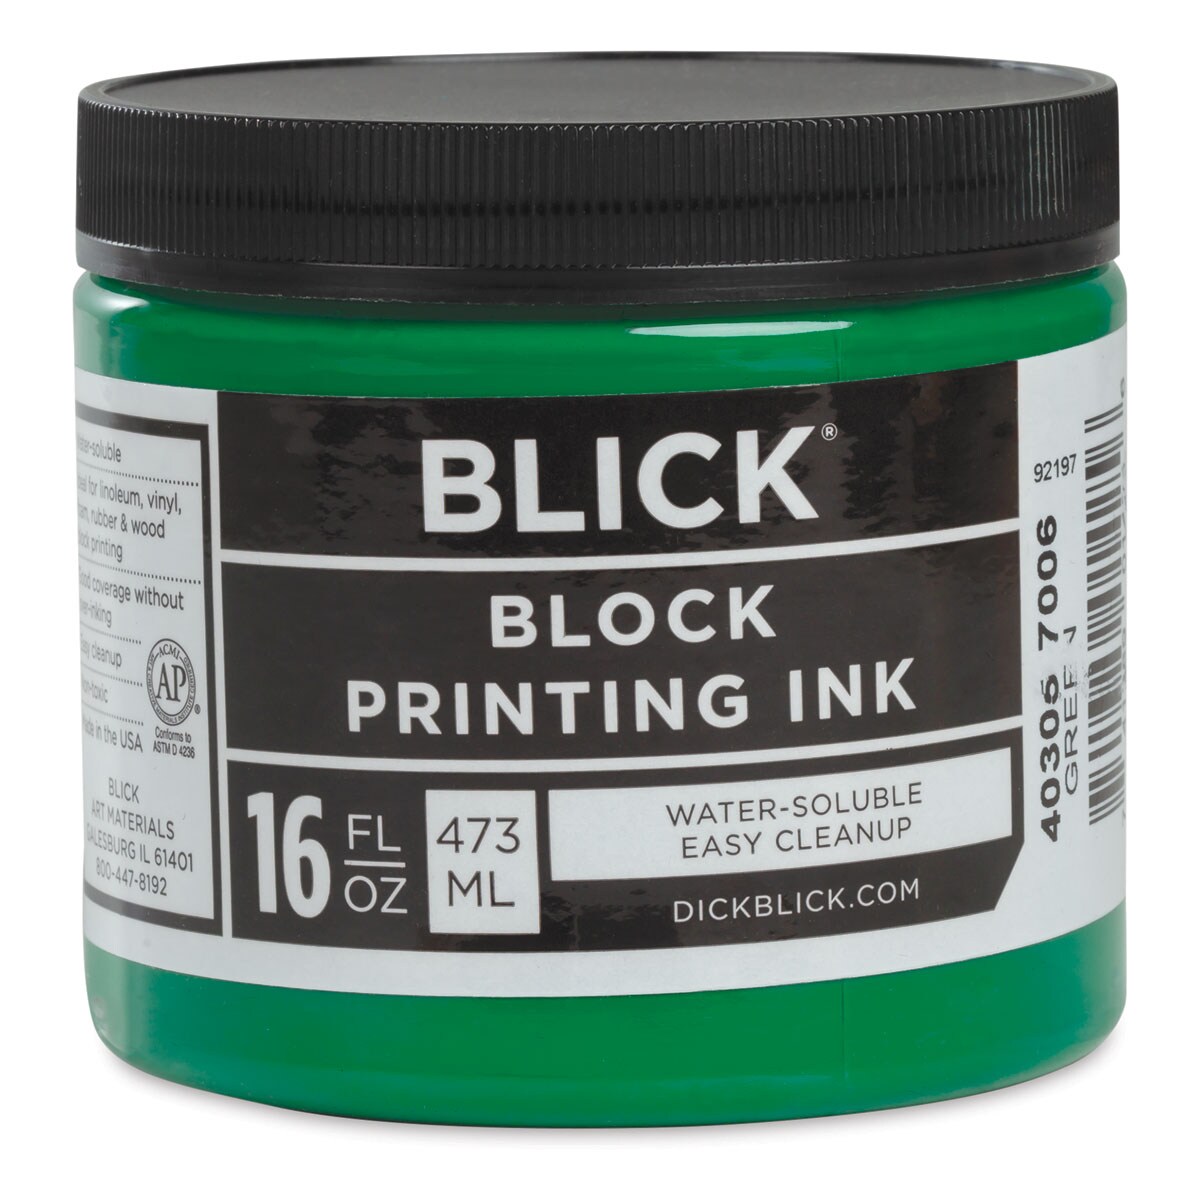 Blick Water-Soluble Block Printing Ink - Green, 16 oz Jar